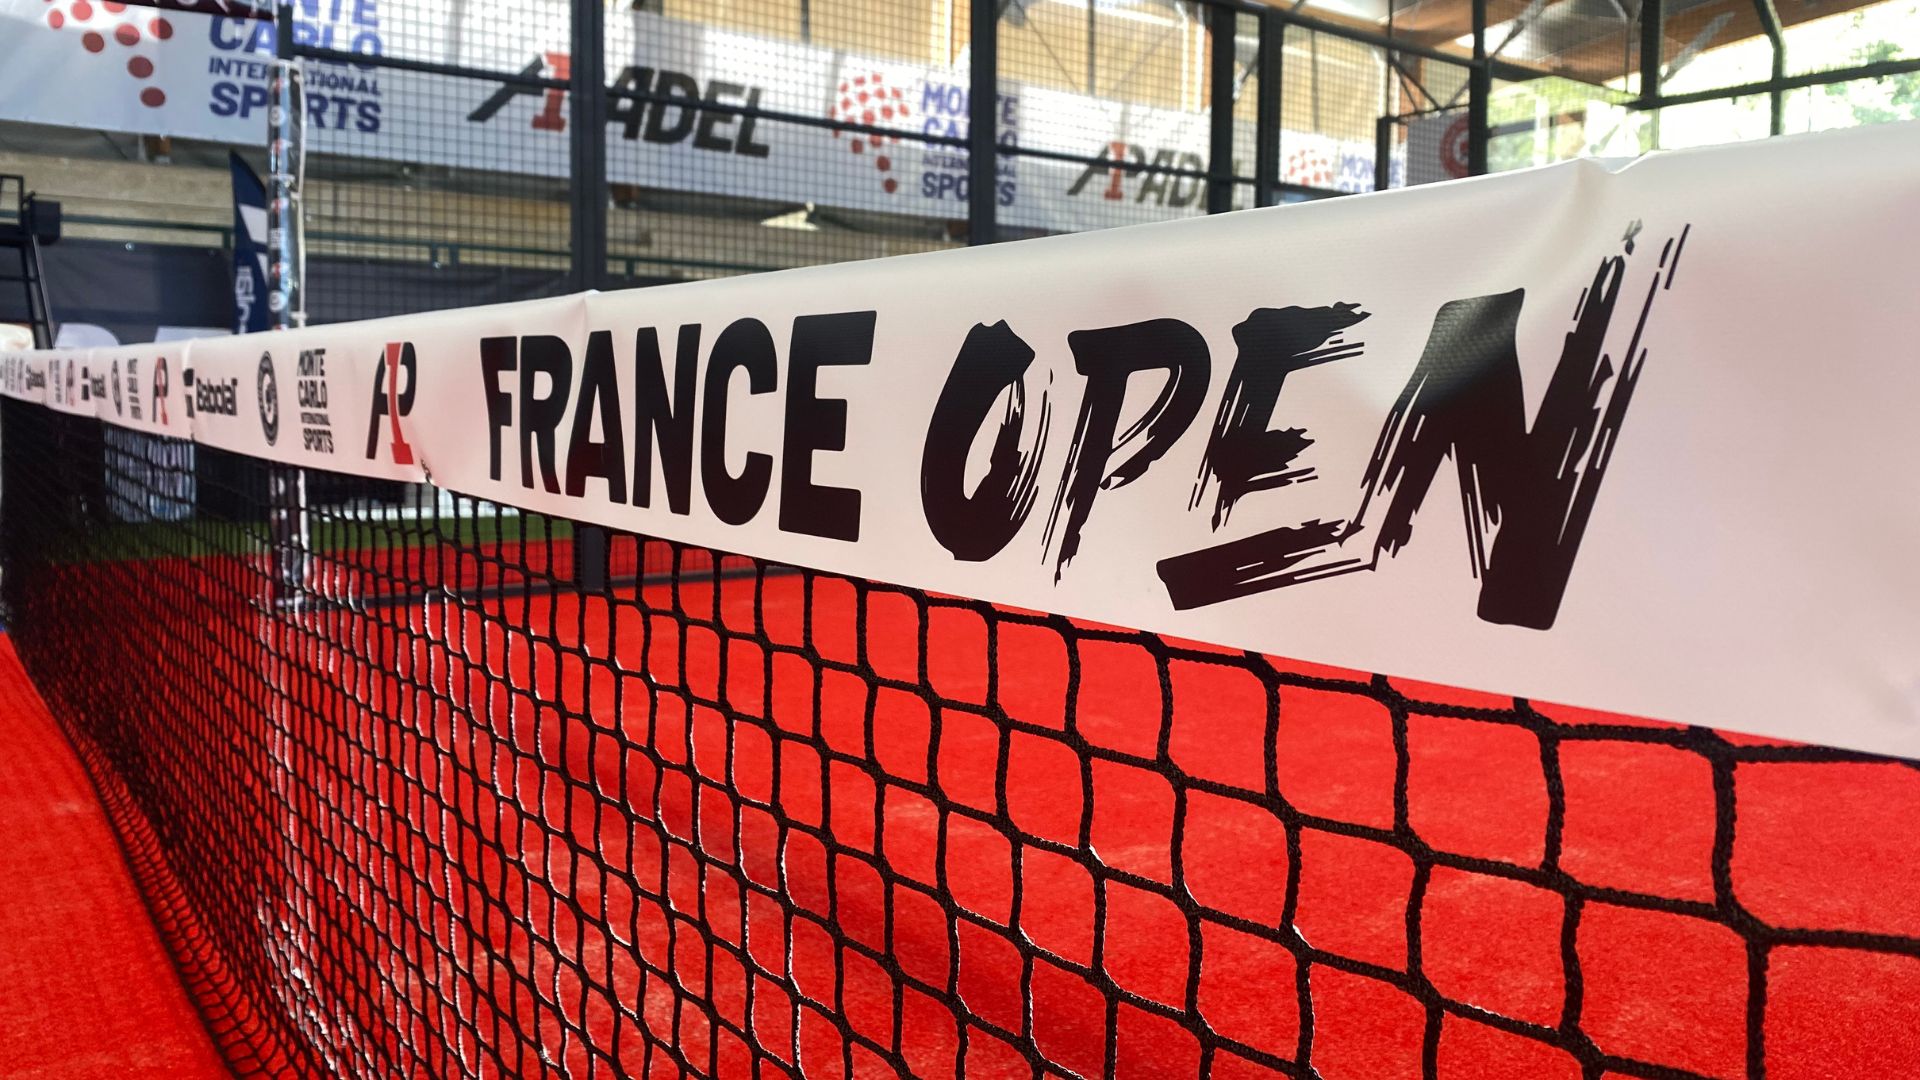 A1 Padel France Open: anden dag i kvalifikationen